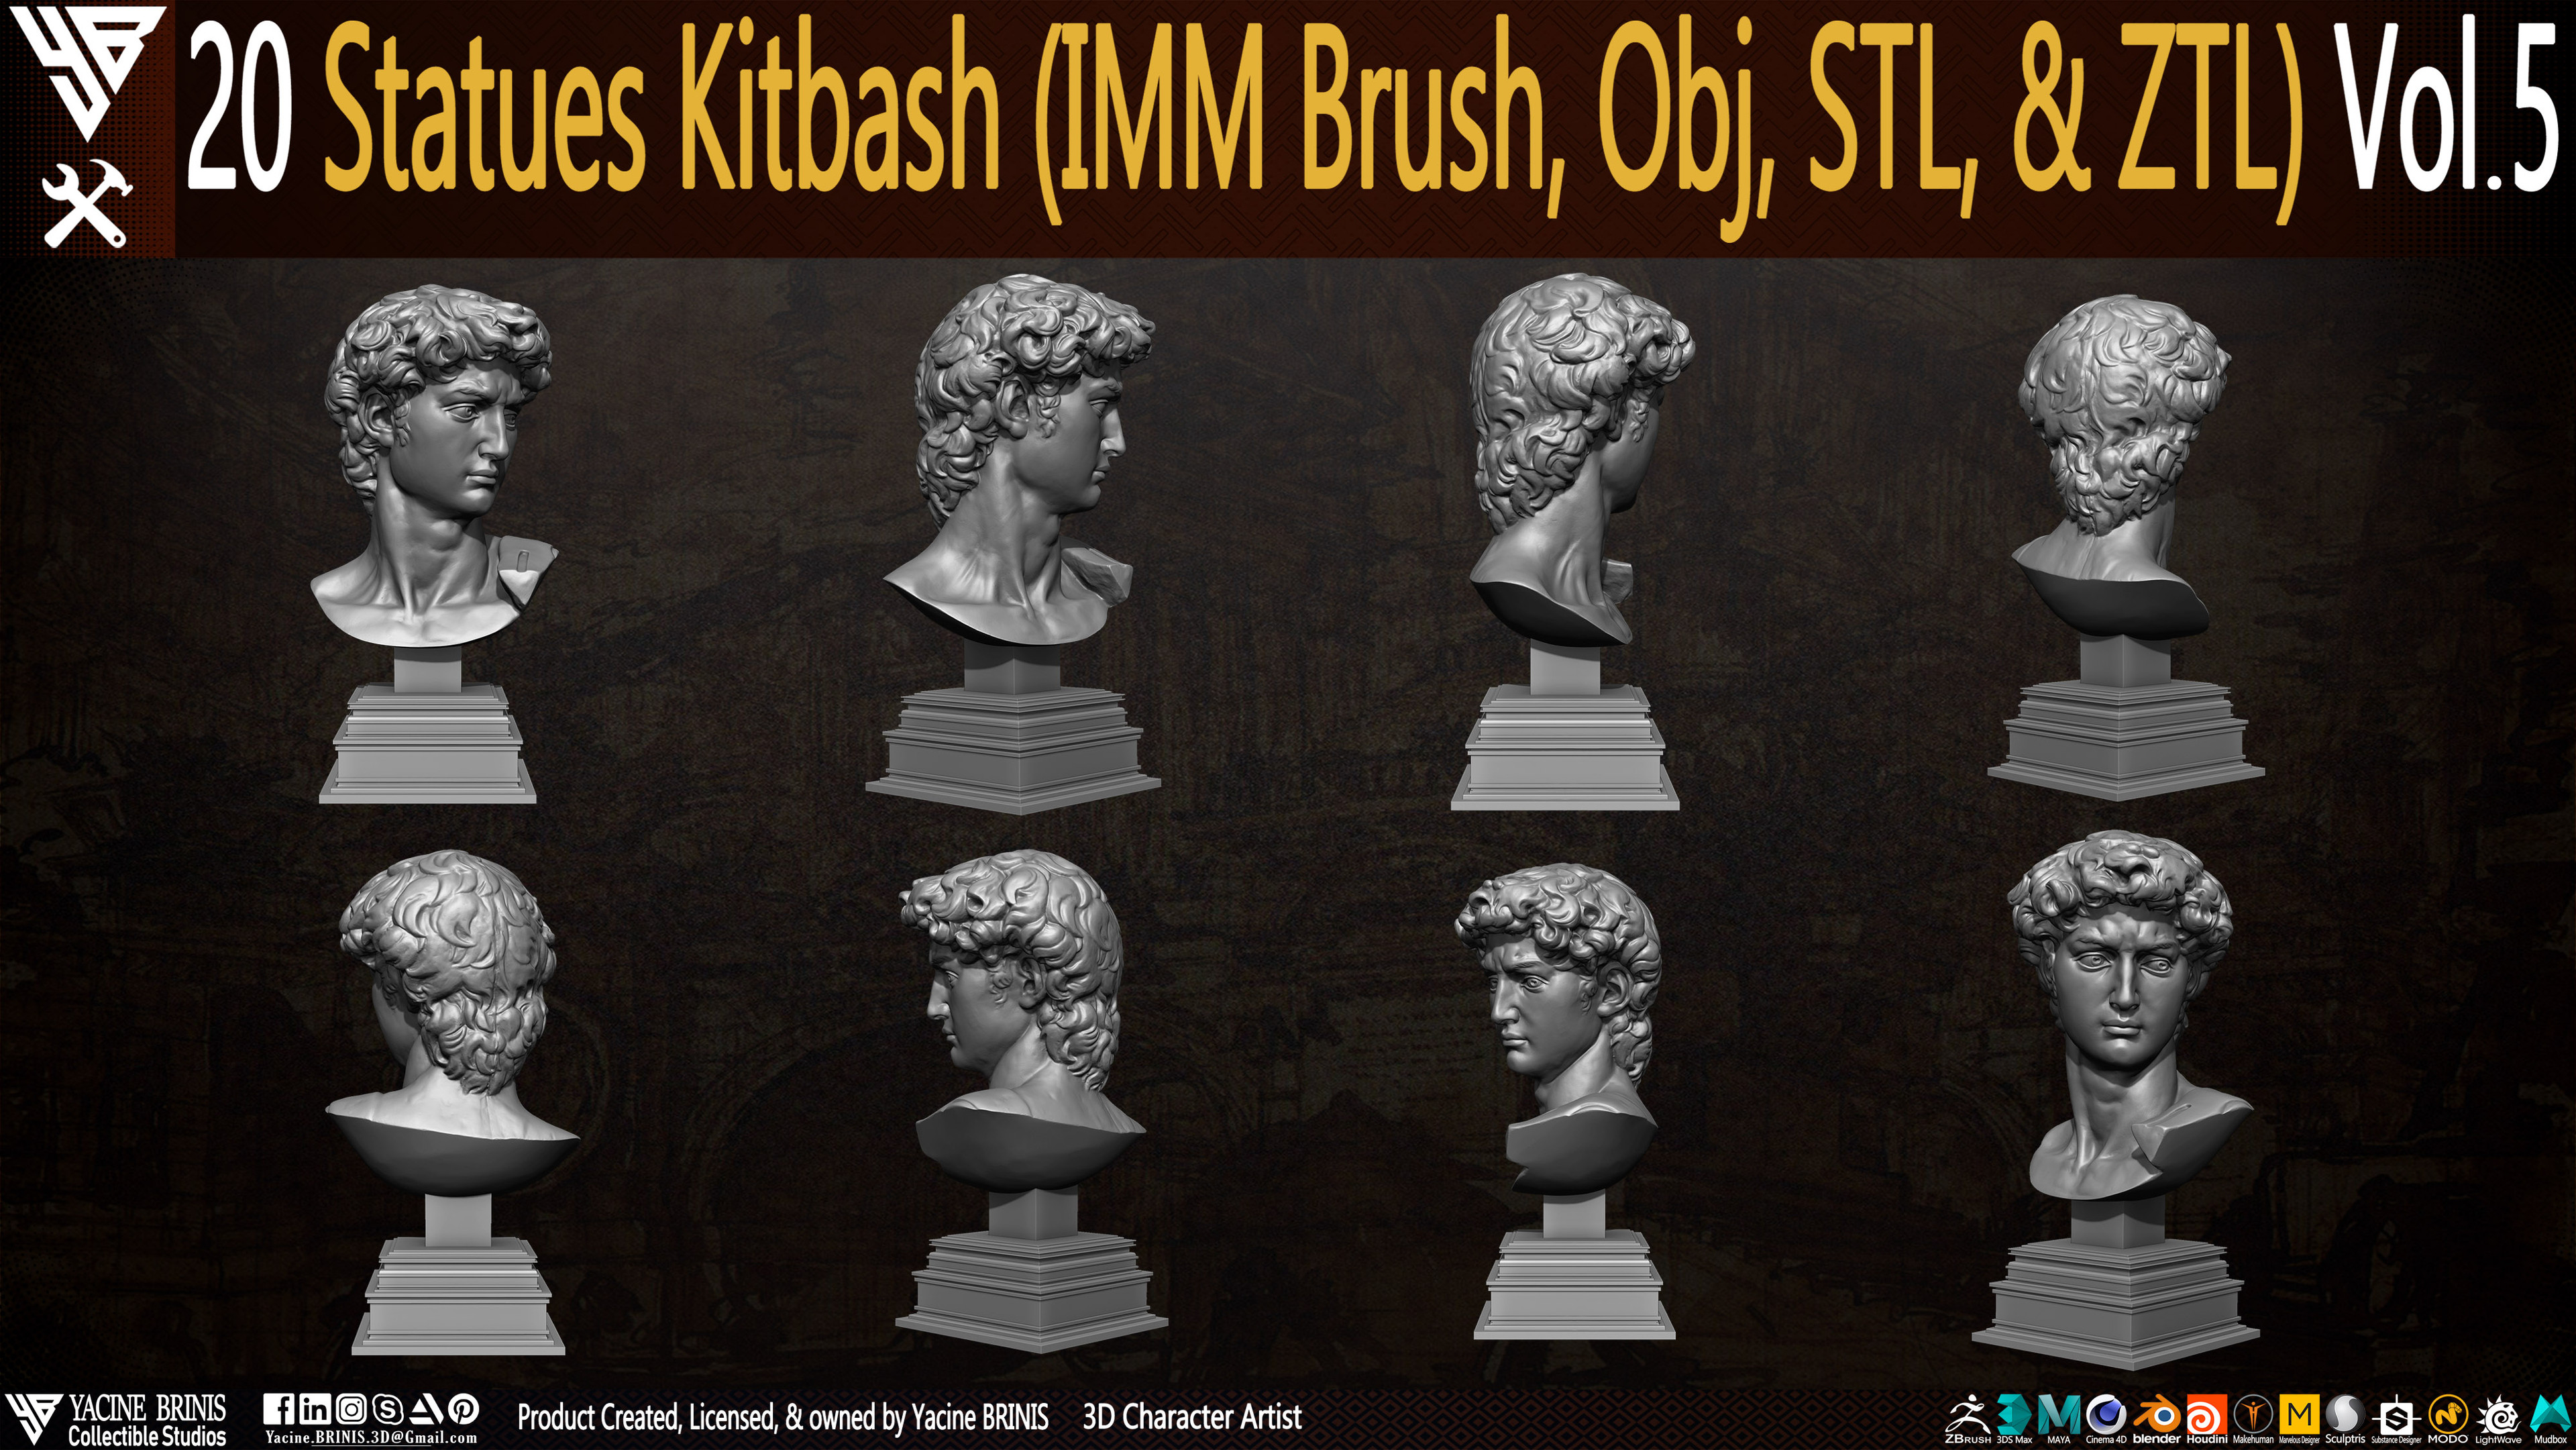 Statues Kitbash by yacine brinis Set 31